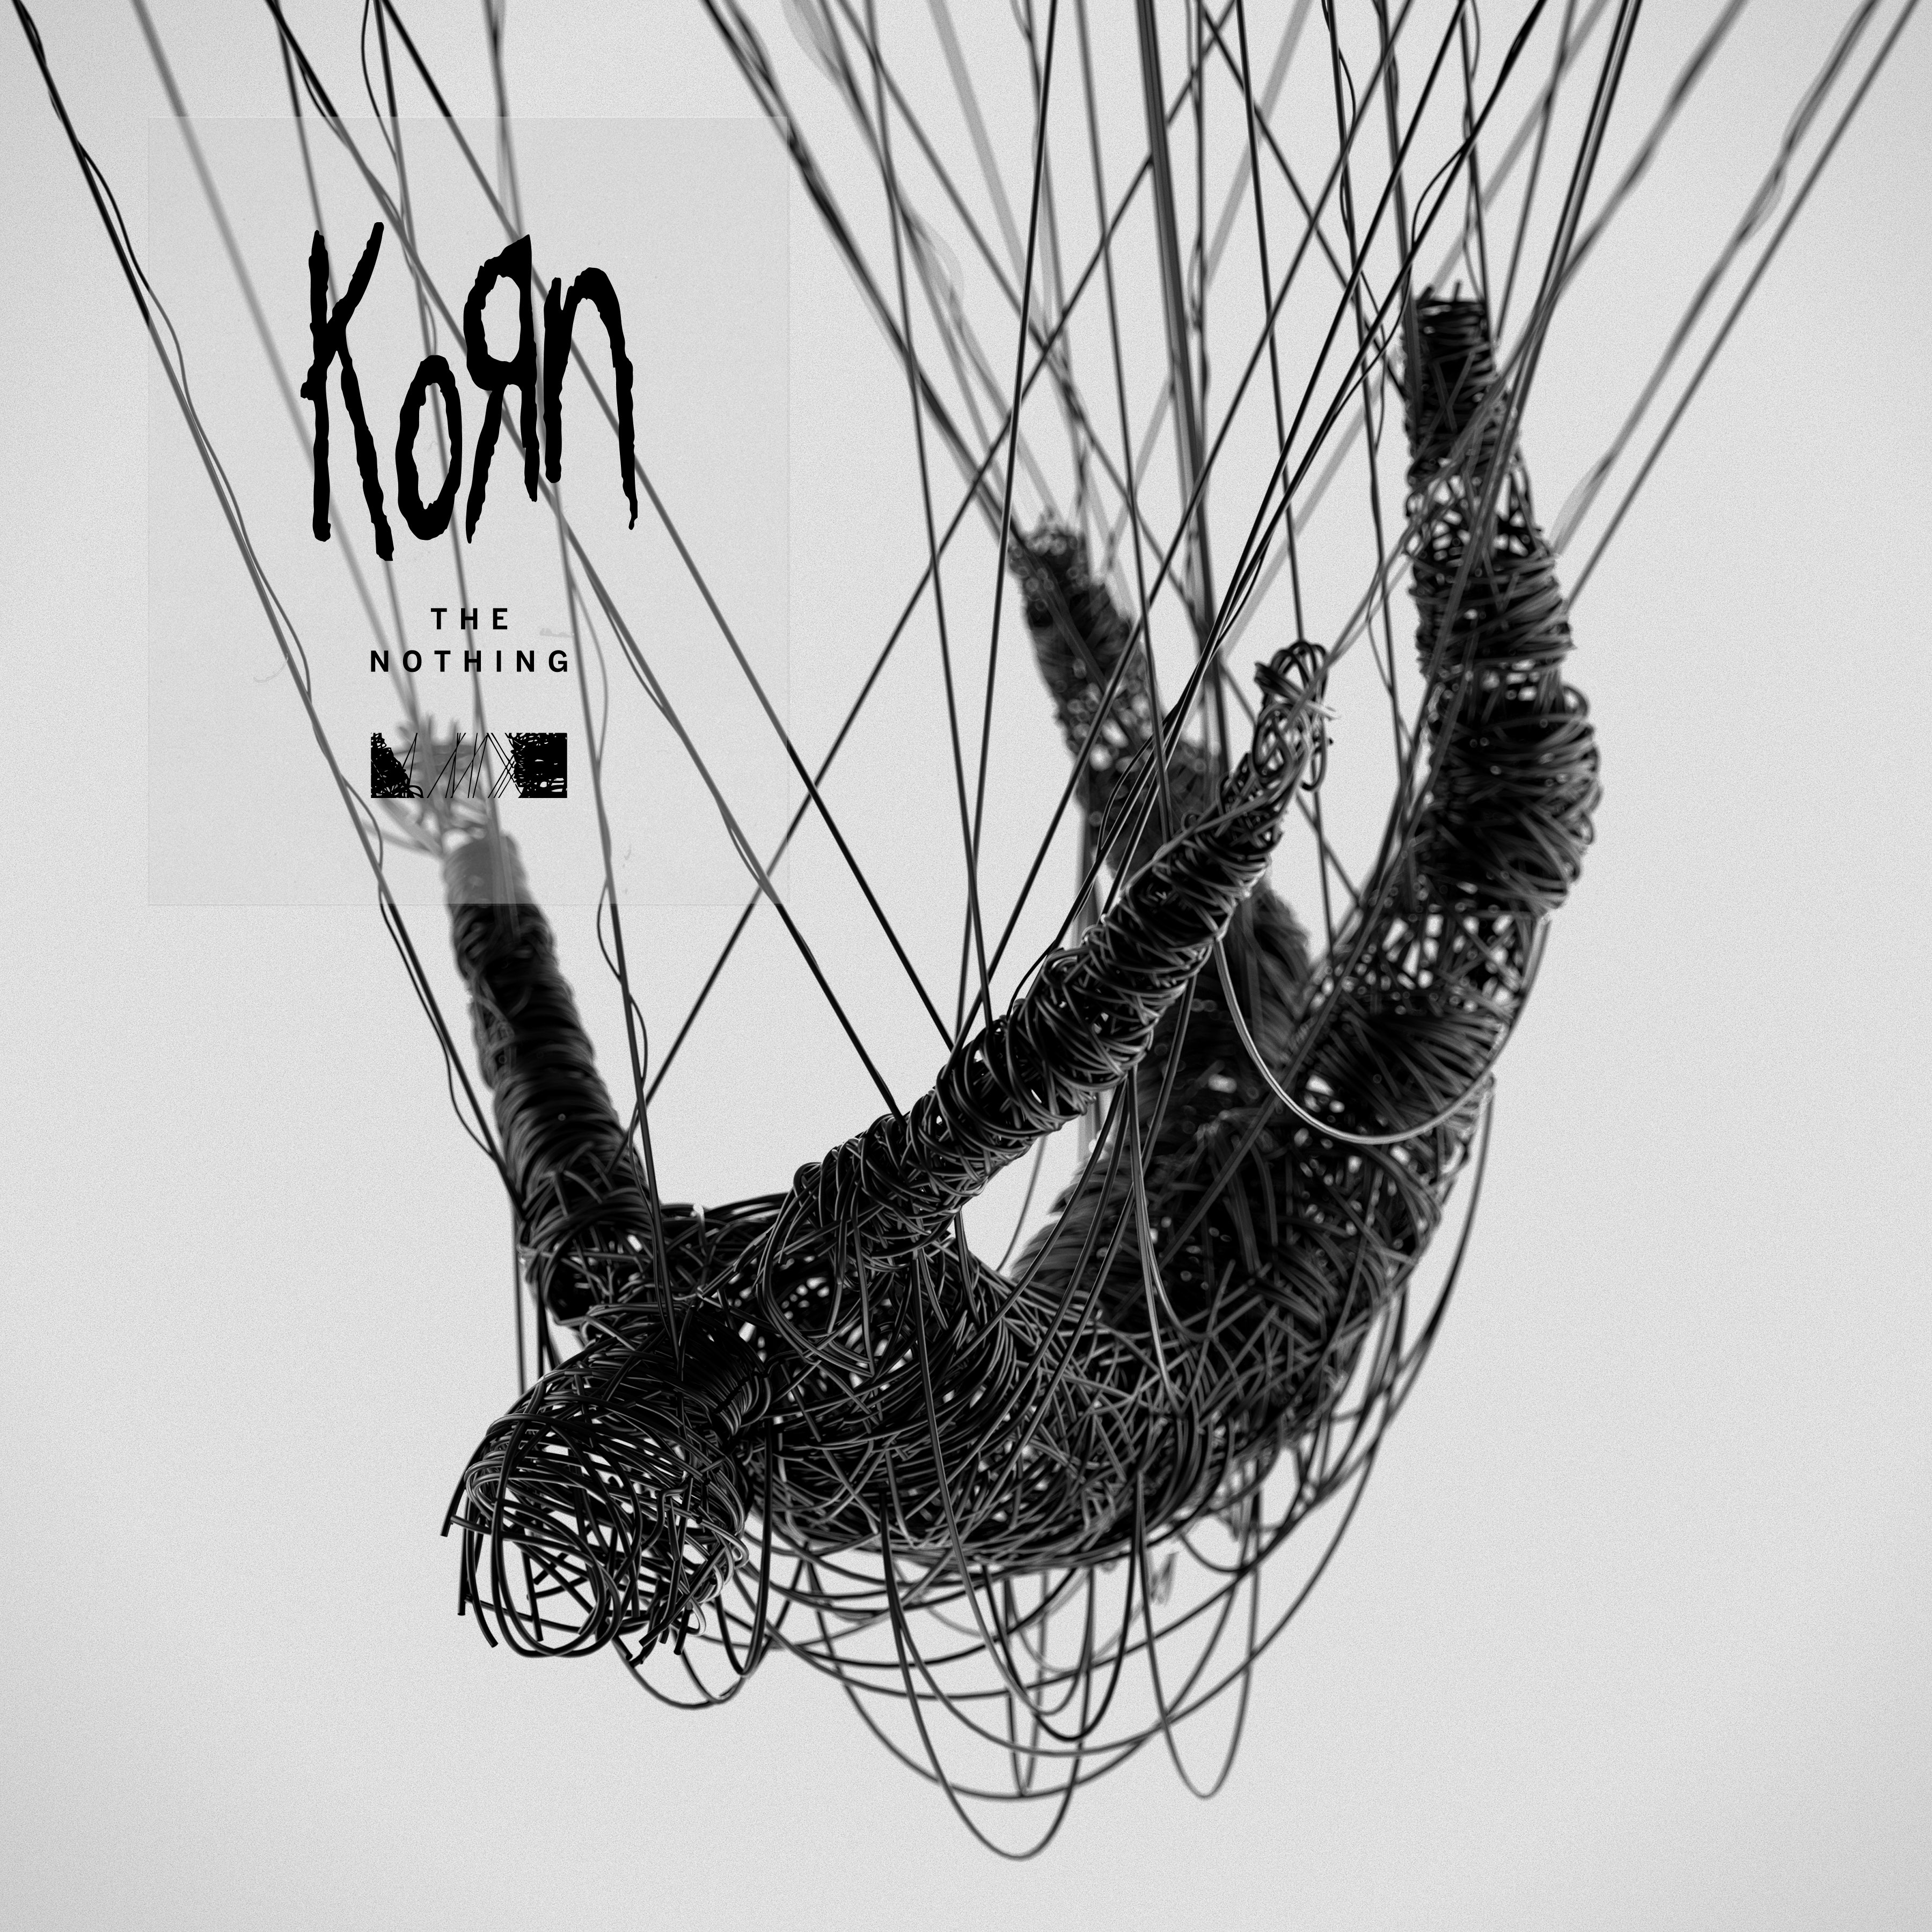 Korn's new album The Nothing releases on September 13, 2019